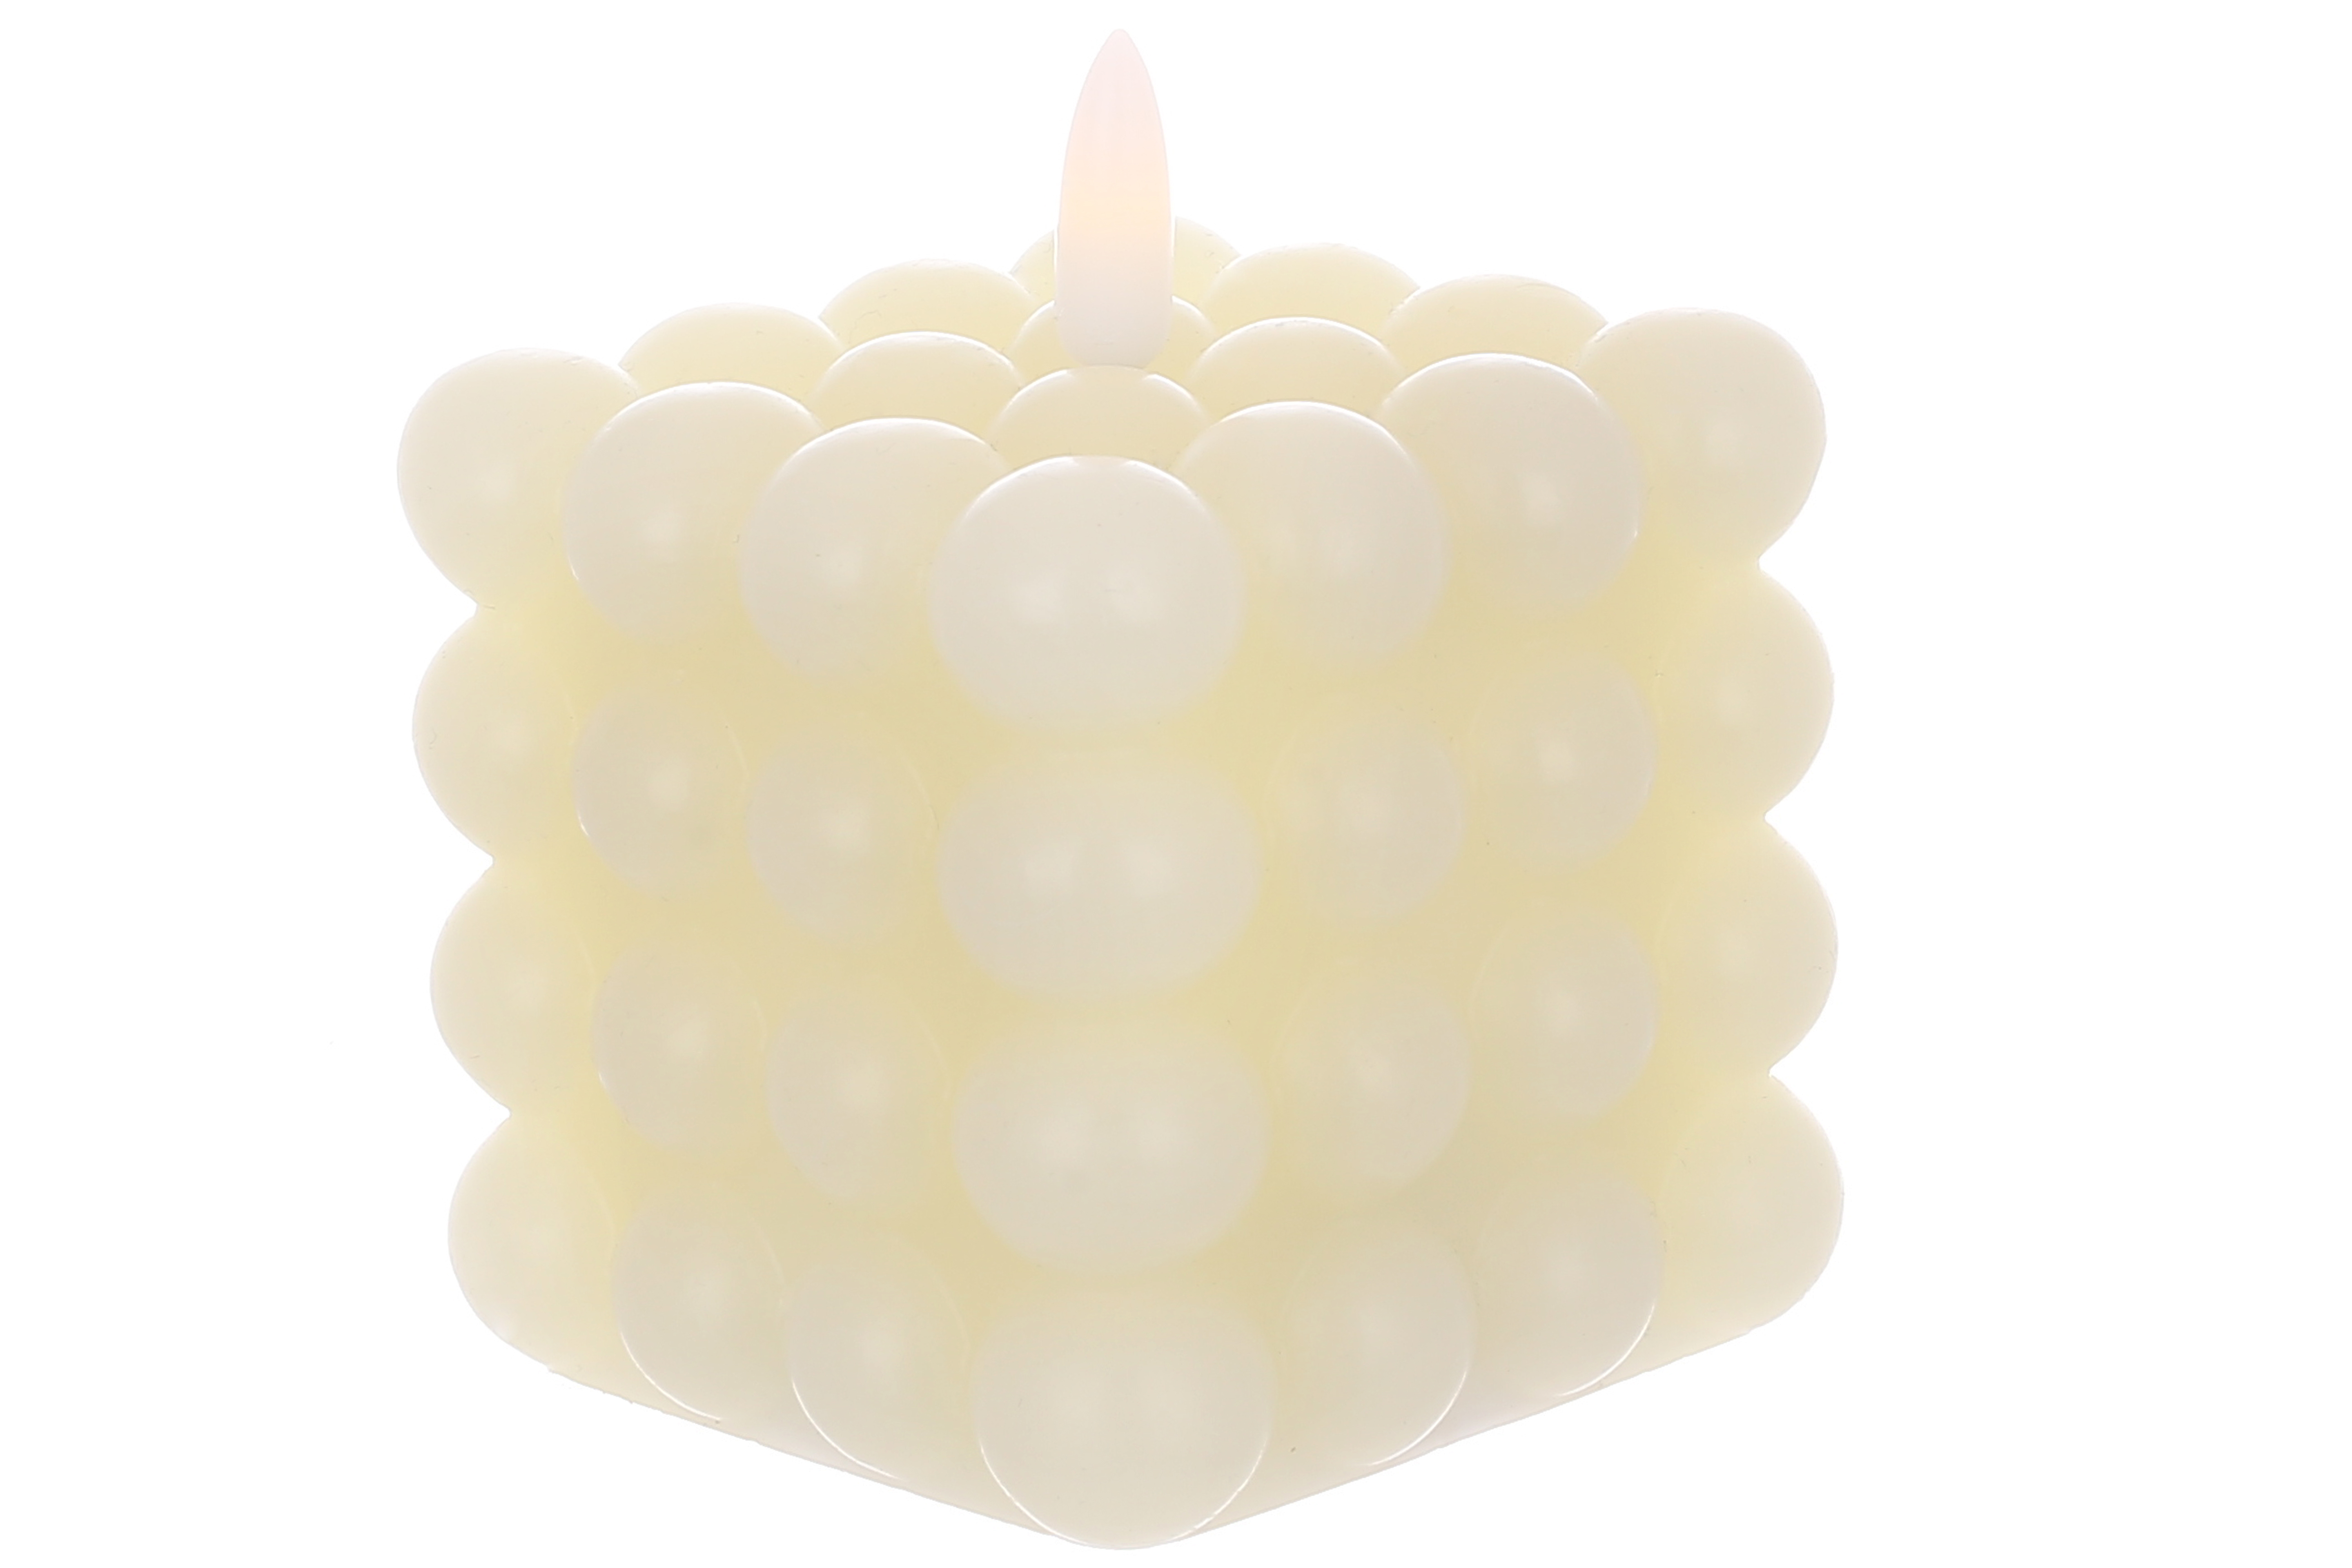 Світлодіодна воскова свічка Bauble з 3D полум'ям 7.5*9.5см (2хААА не входять до комплекту), тепле біле світло, колір - vanilla